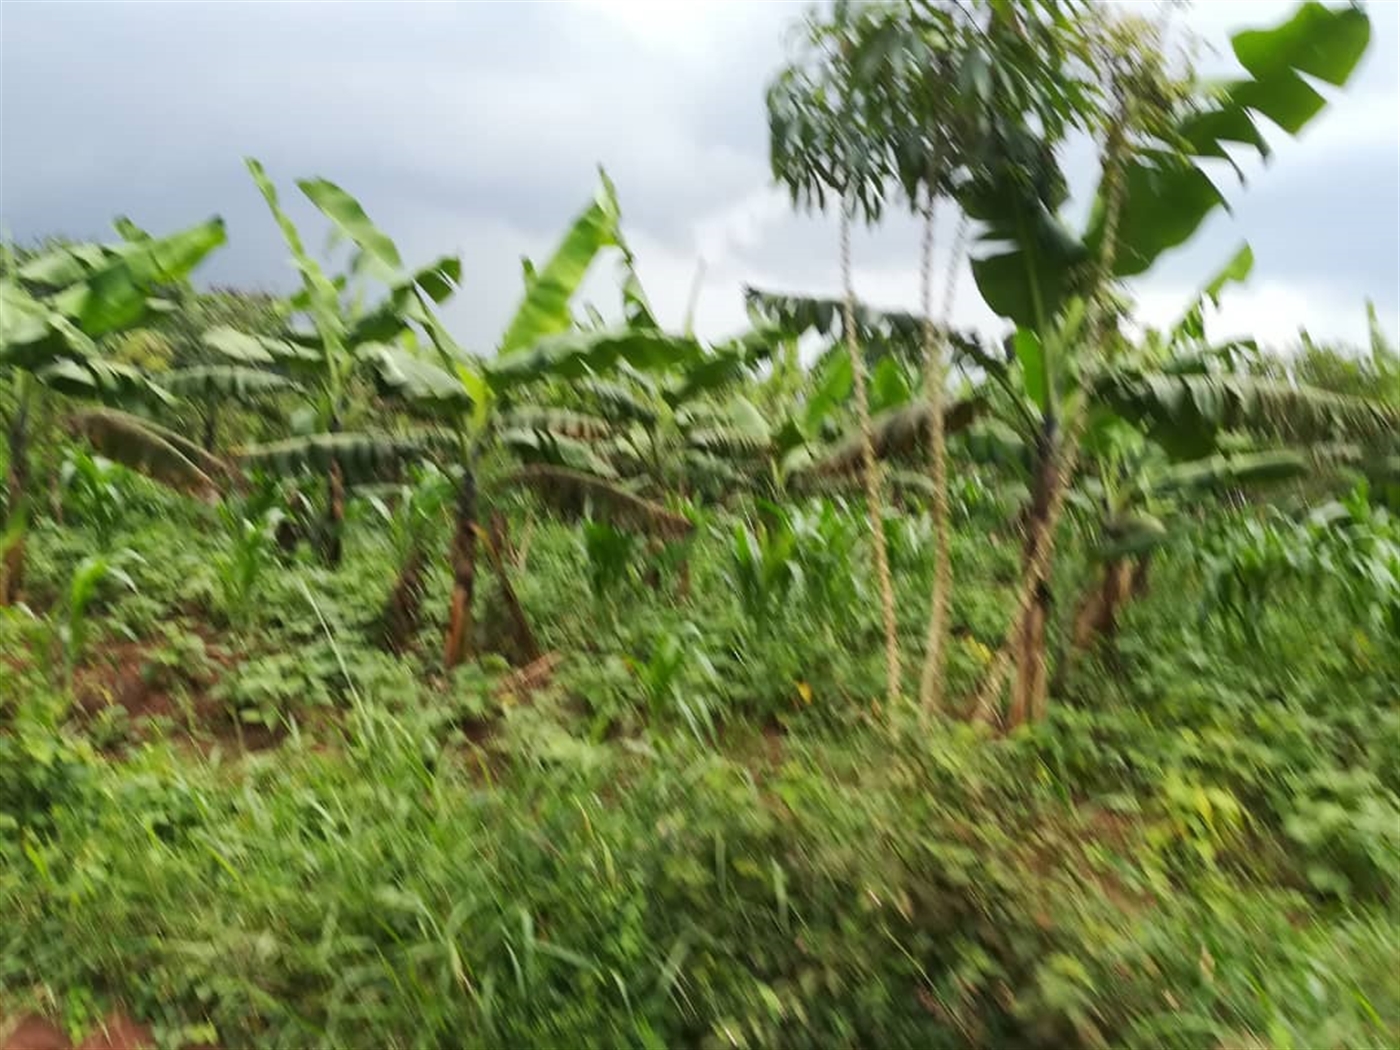 Agricultural Land for sale in Kisoga Mukono